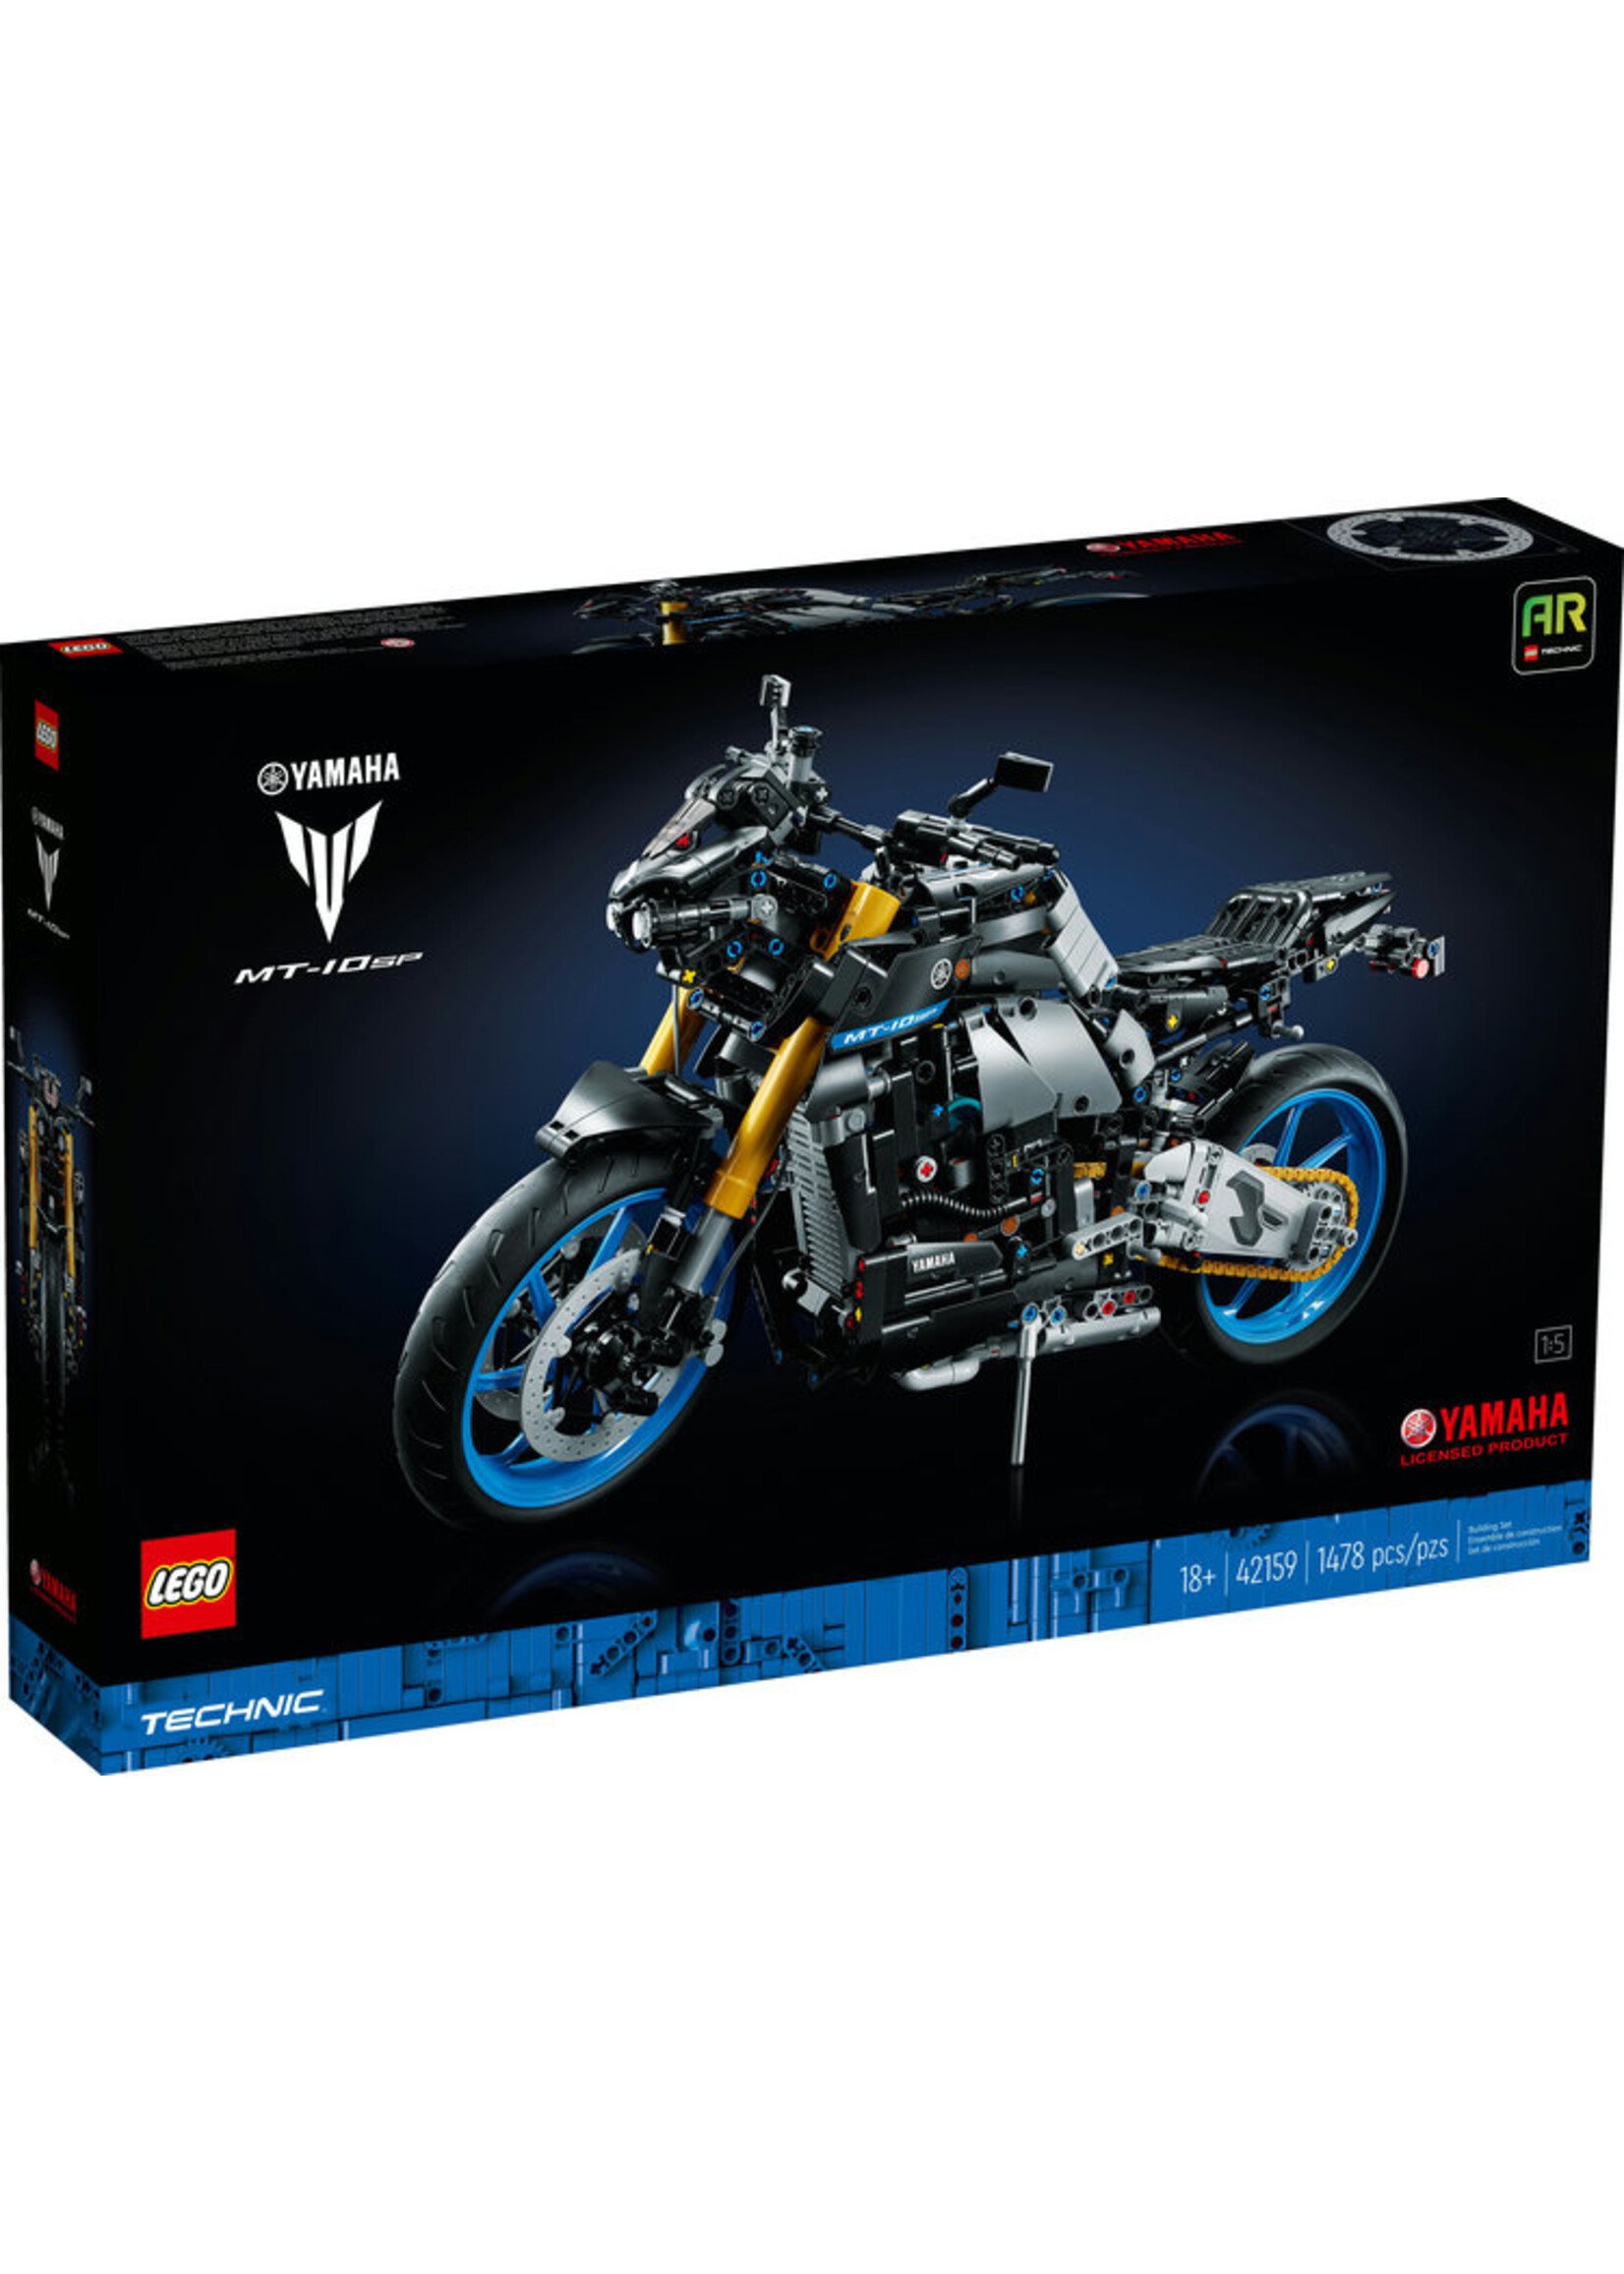 LEGO 42159 - Yamaha MT-10 SP V39